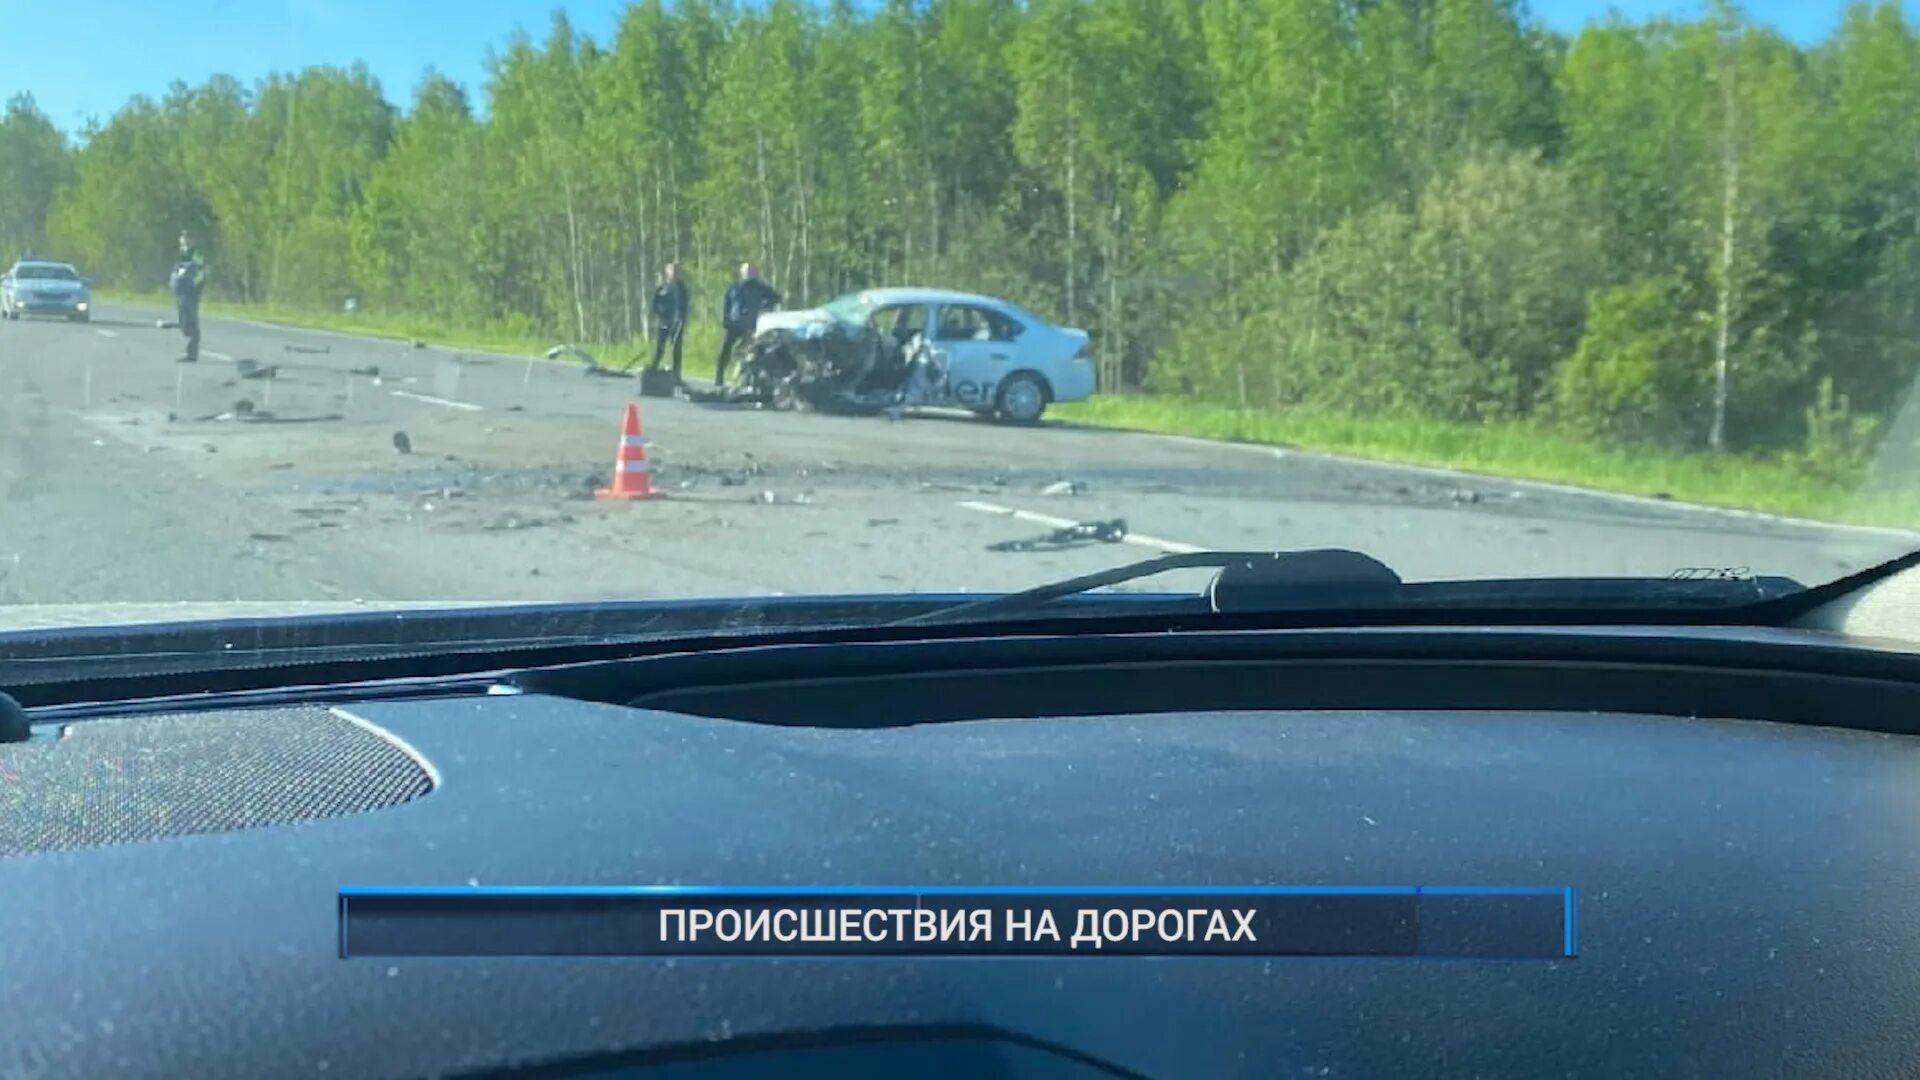 Подсмотрено рыбинск. Автомобиль на дороге. Происшествия в Рыбинске вчера. Рыбинск ДТП подсмотрено.